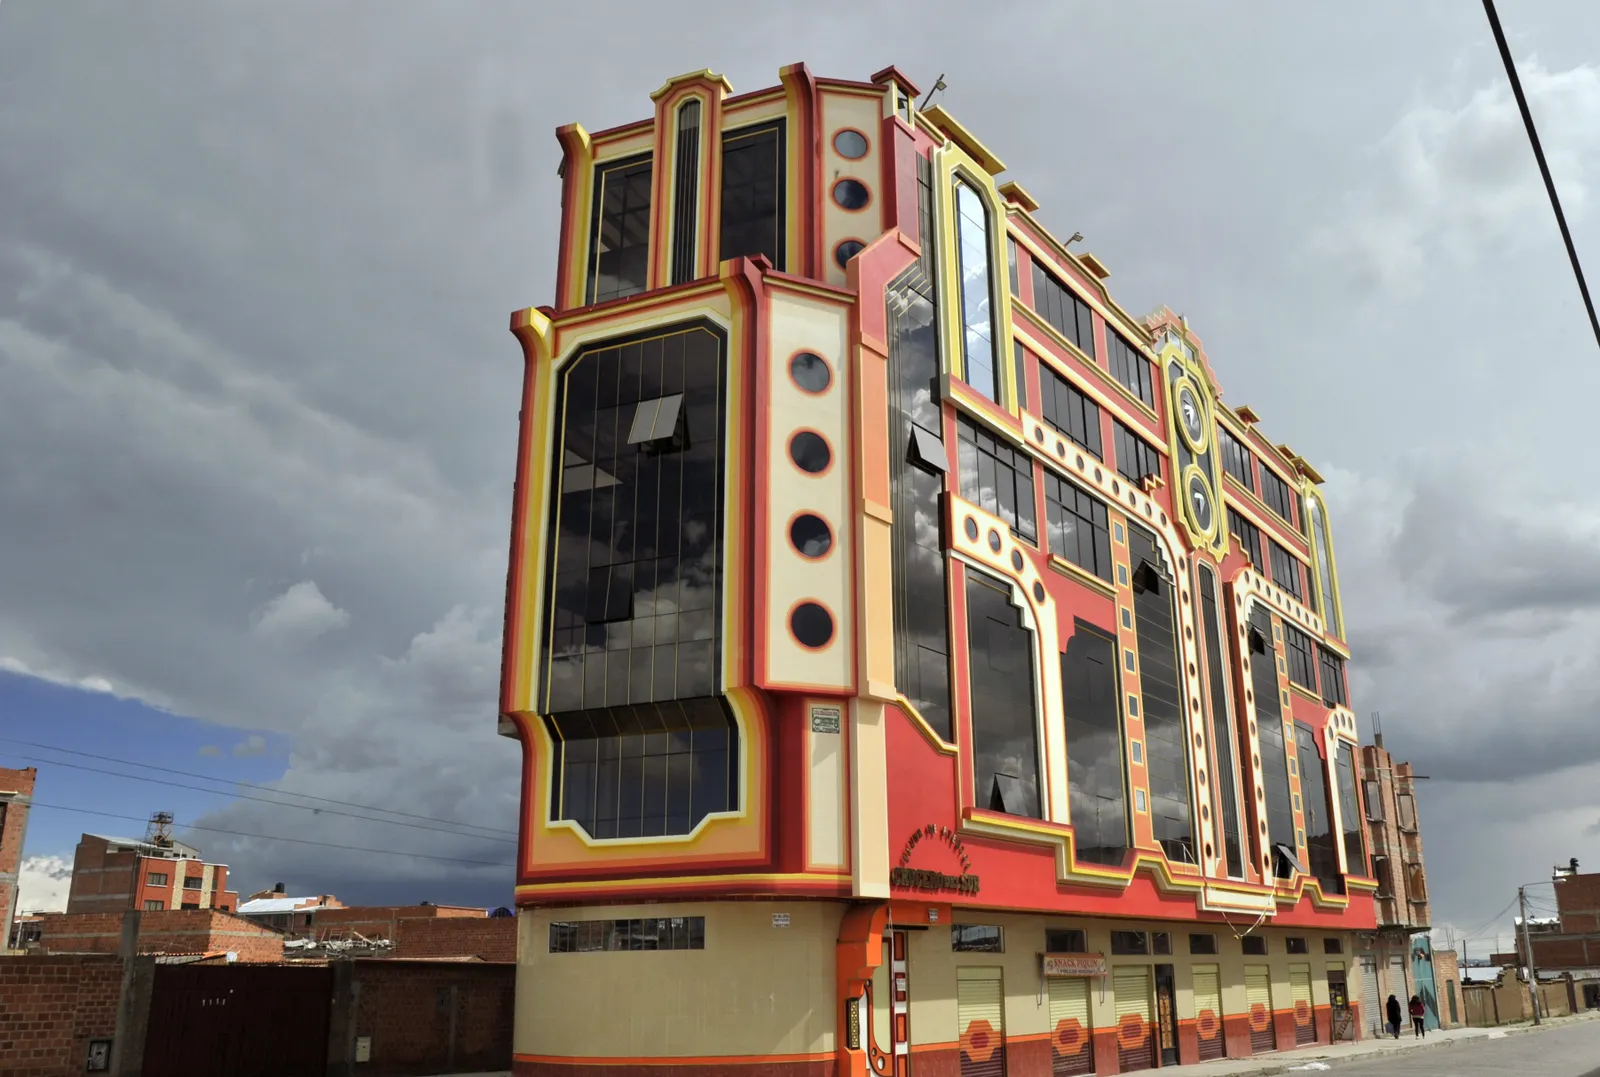 El Alto Cholets, El Alto, Bolivia (thiết kế bởi Freddy Mamani Silvestre, 2005) Nằm ngay bên ngoài thủ đô La Paz,  El Alto Cholets của Freddy Mamani Silvestre là sự khai hoang của nền văn hóa Andean. Những ngôi nhà cholet sống động, theo chủ nghĩa tối đa này—từ ghép của “chalet” và “chola”—bày tỏ lòng kính trọng đối với người dân bản địa Bolivia và phản đối trực tiếp các tông màu trầm truyền thống và gạch lộ ra ngoài của kiến ​​trúc Bolivian hiện đại. Cholets là tòa nhà đa năng, với tầng một được sử dụng cho các doanh nghiệp thương mại, tầng thứ hai là không gian tổ chức sự kiện và tầng thứ ba dành cho căn hộ.